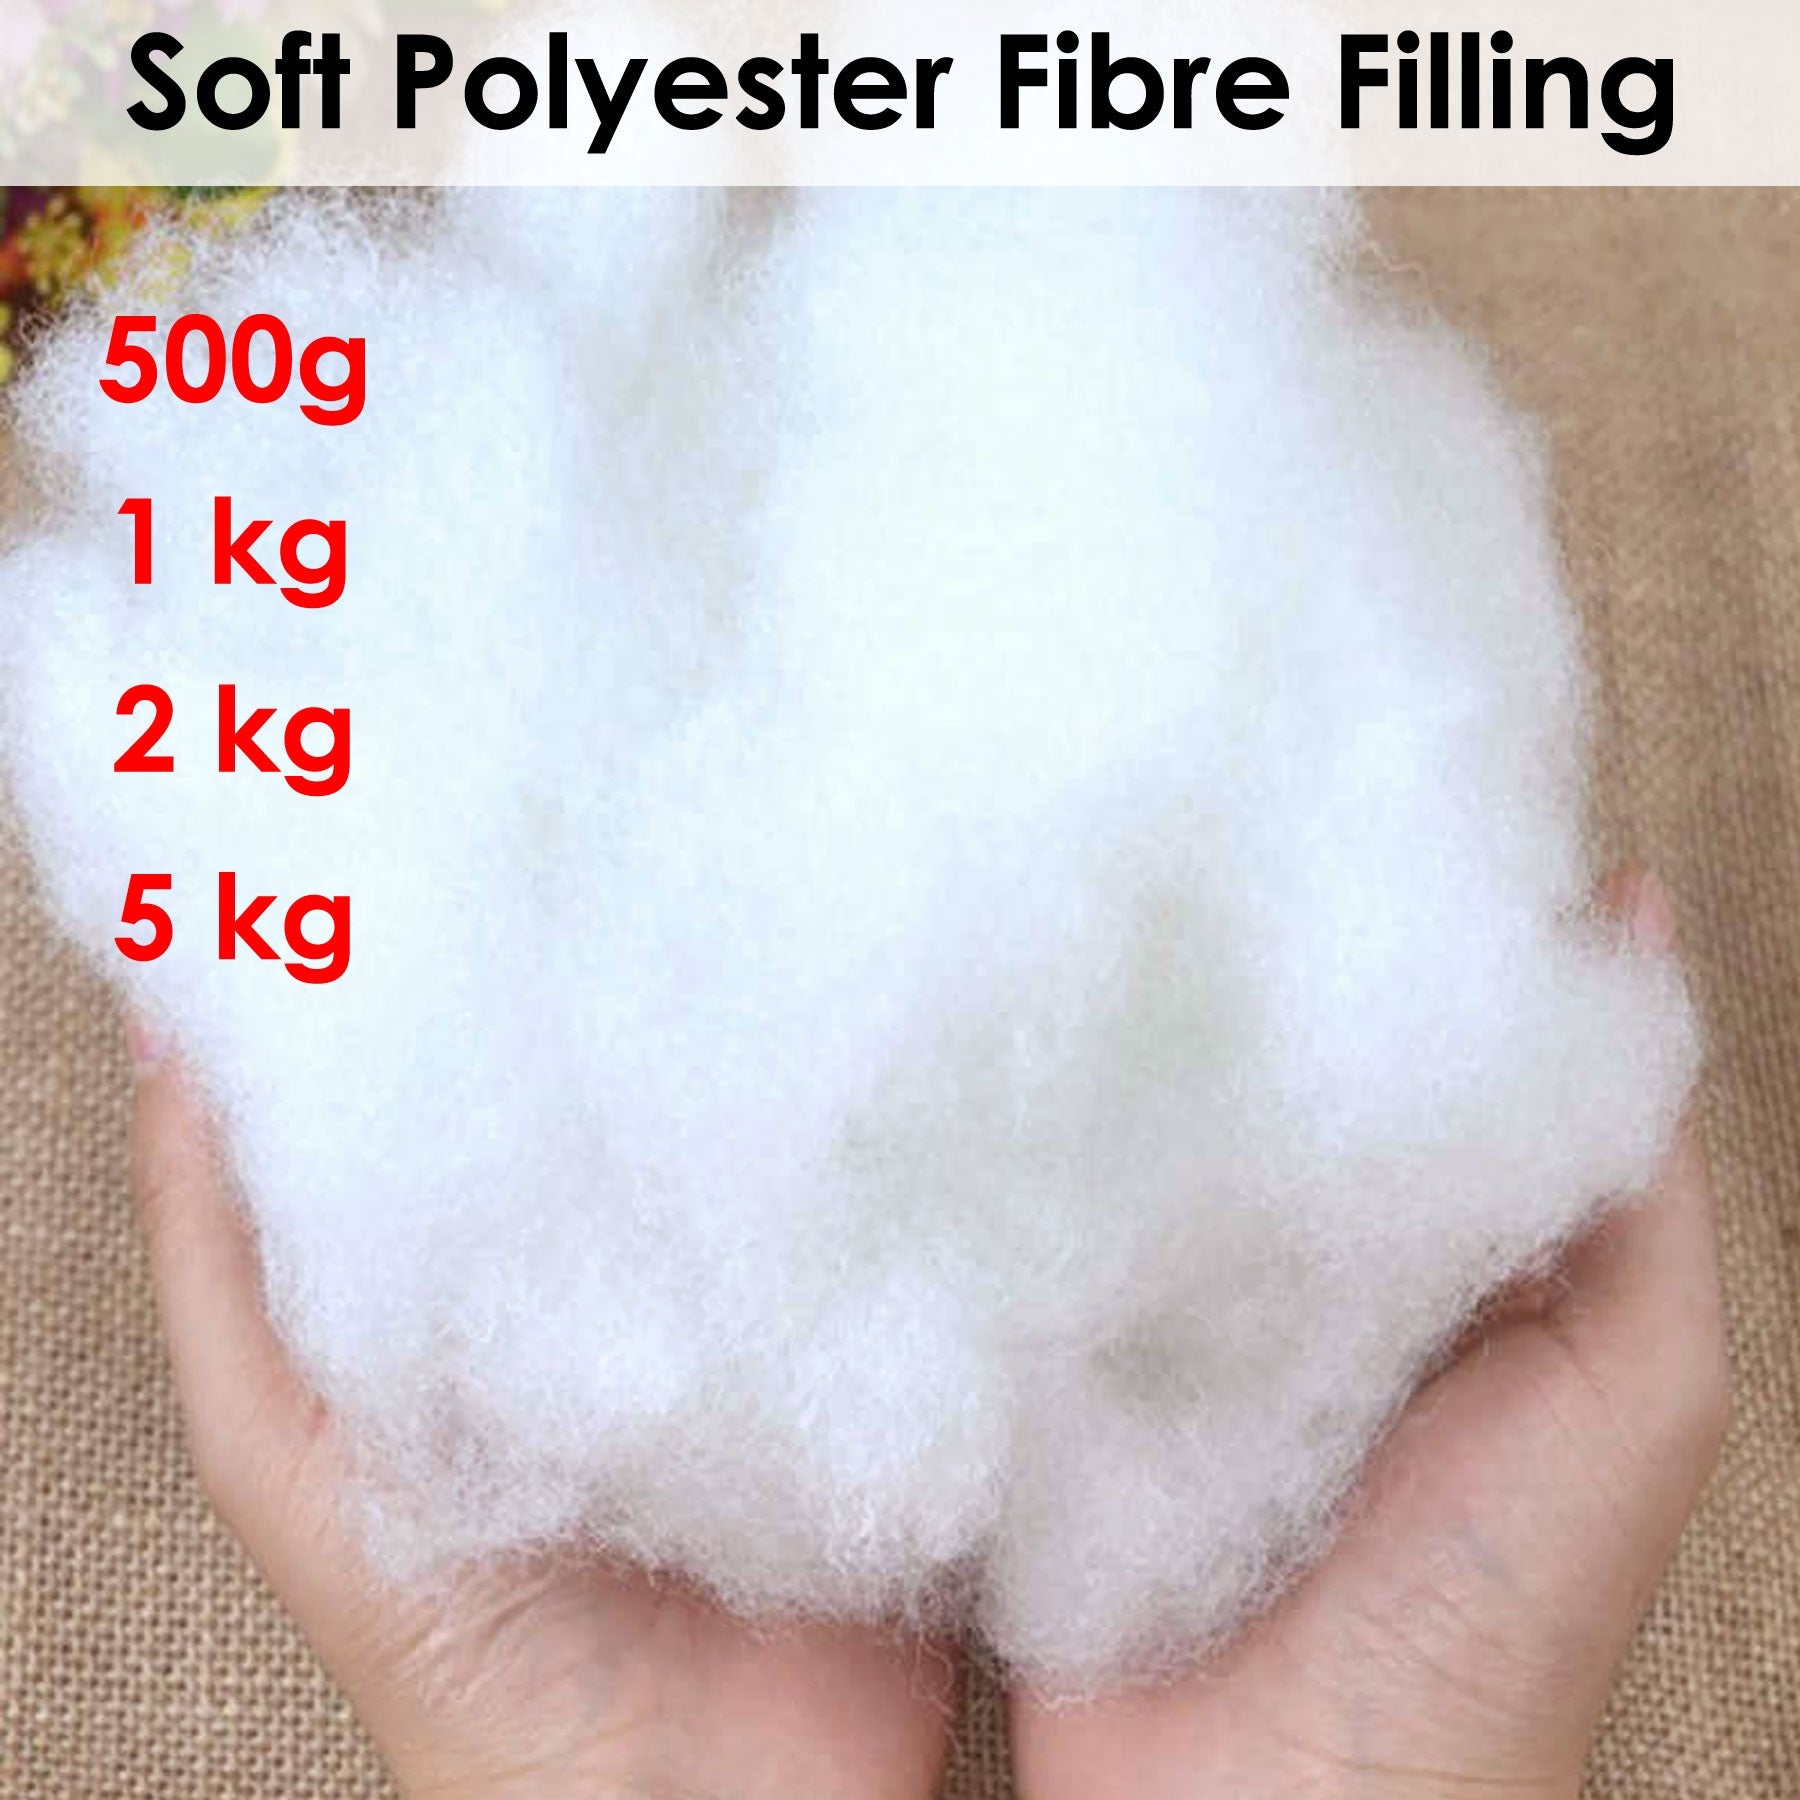 Soft Polyester Fiber Filling 5kg